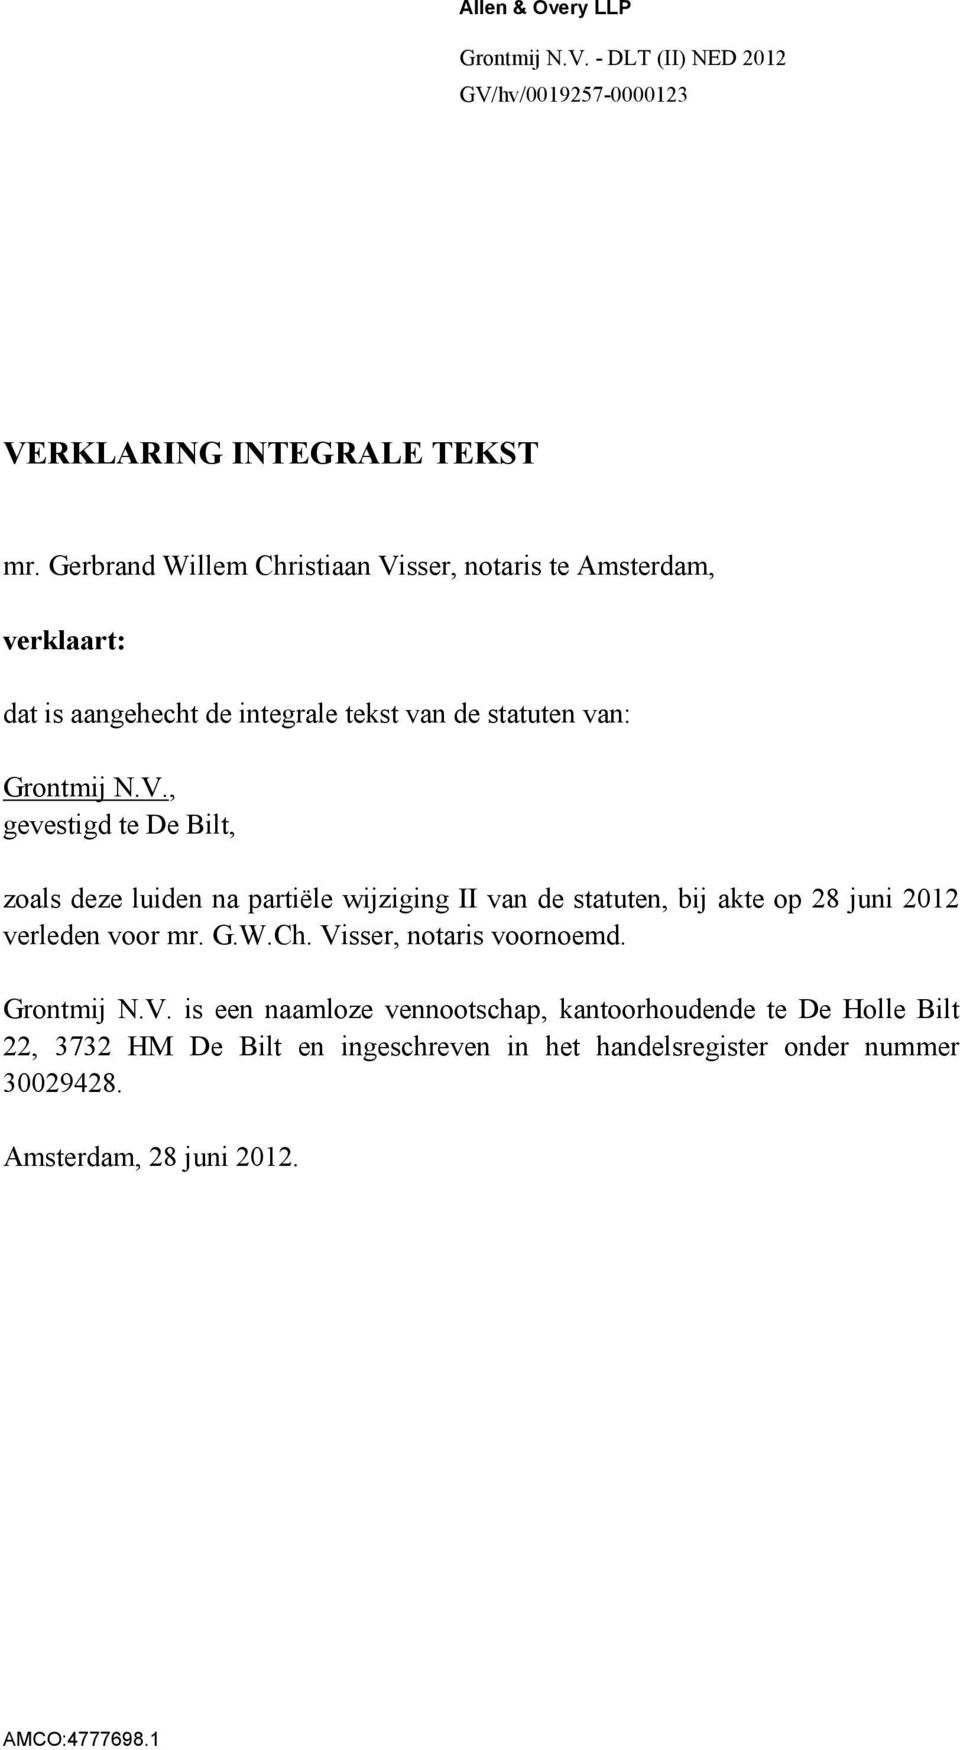 sser, notaris te Amsterdam, verklaart: dat is aangehecht de integrale tekst van de statuten van: Grontmij N.V.